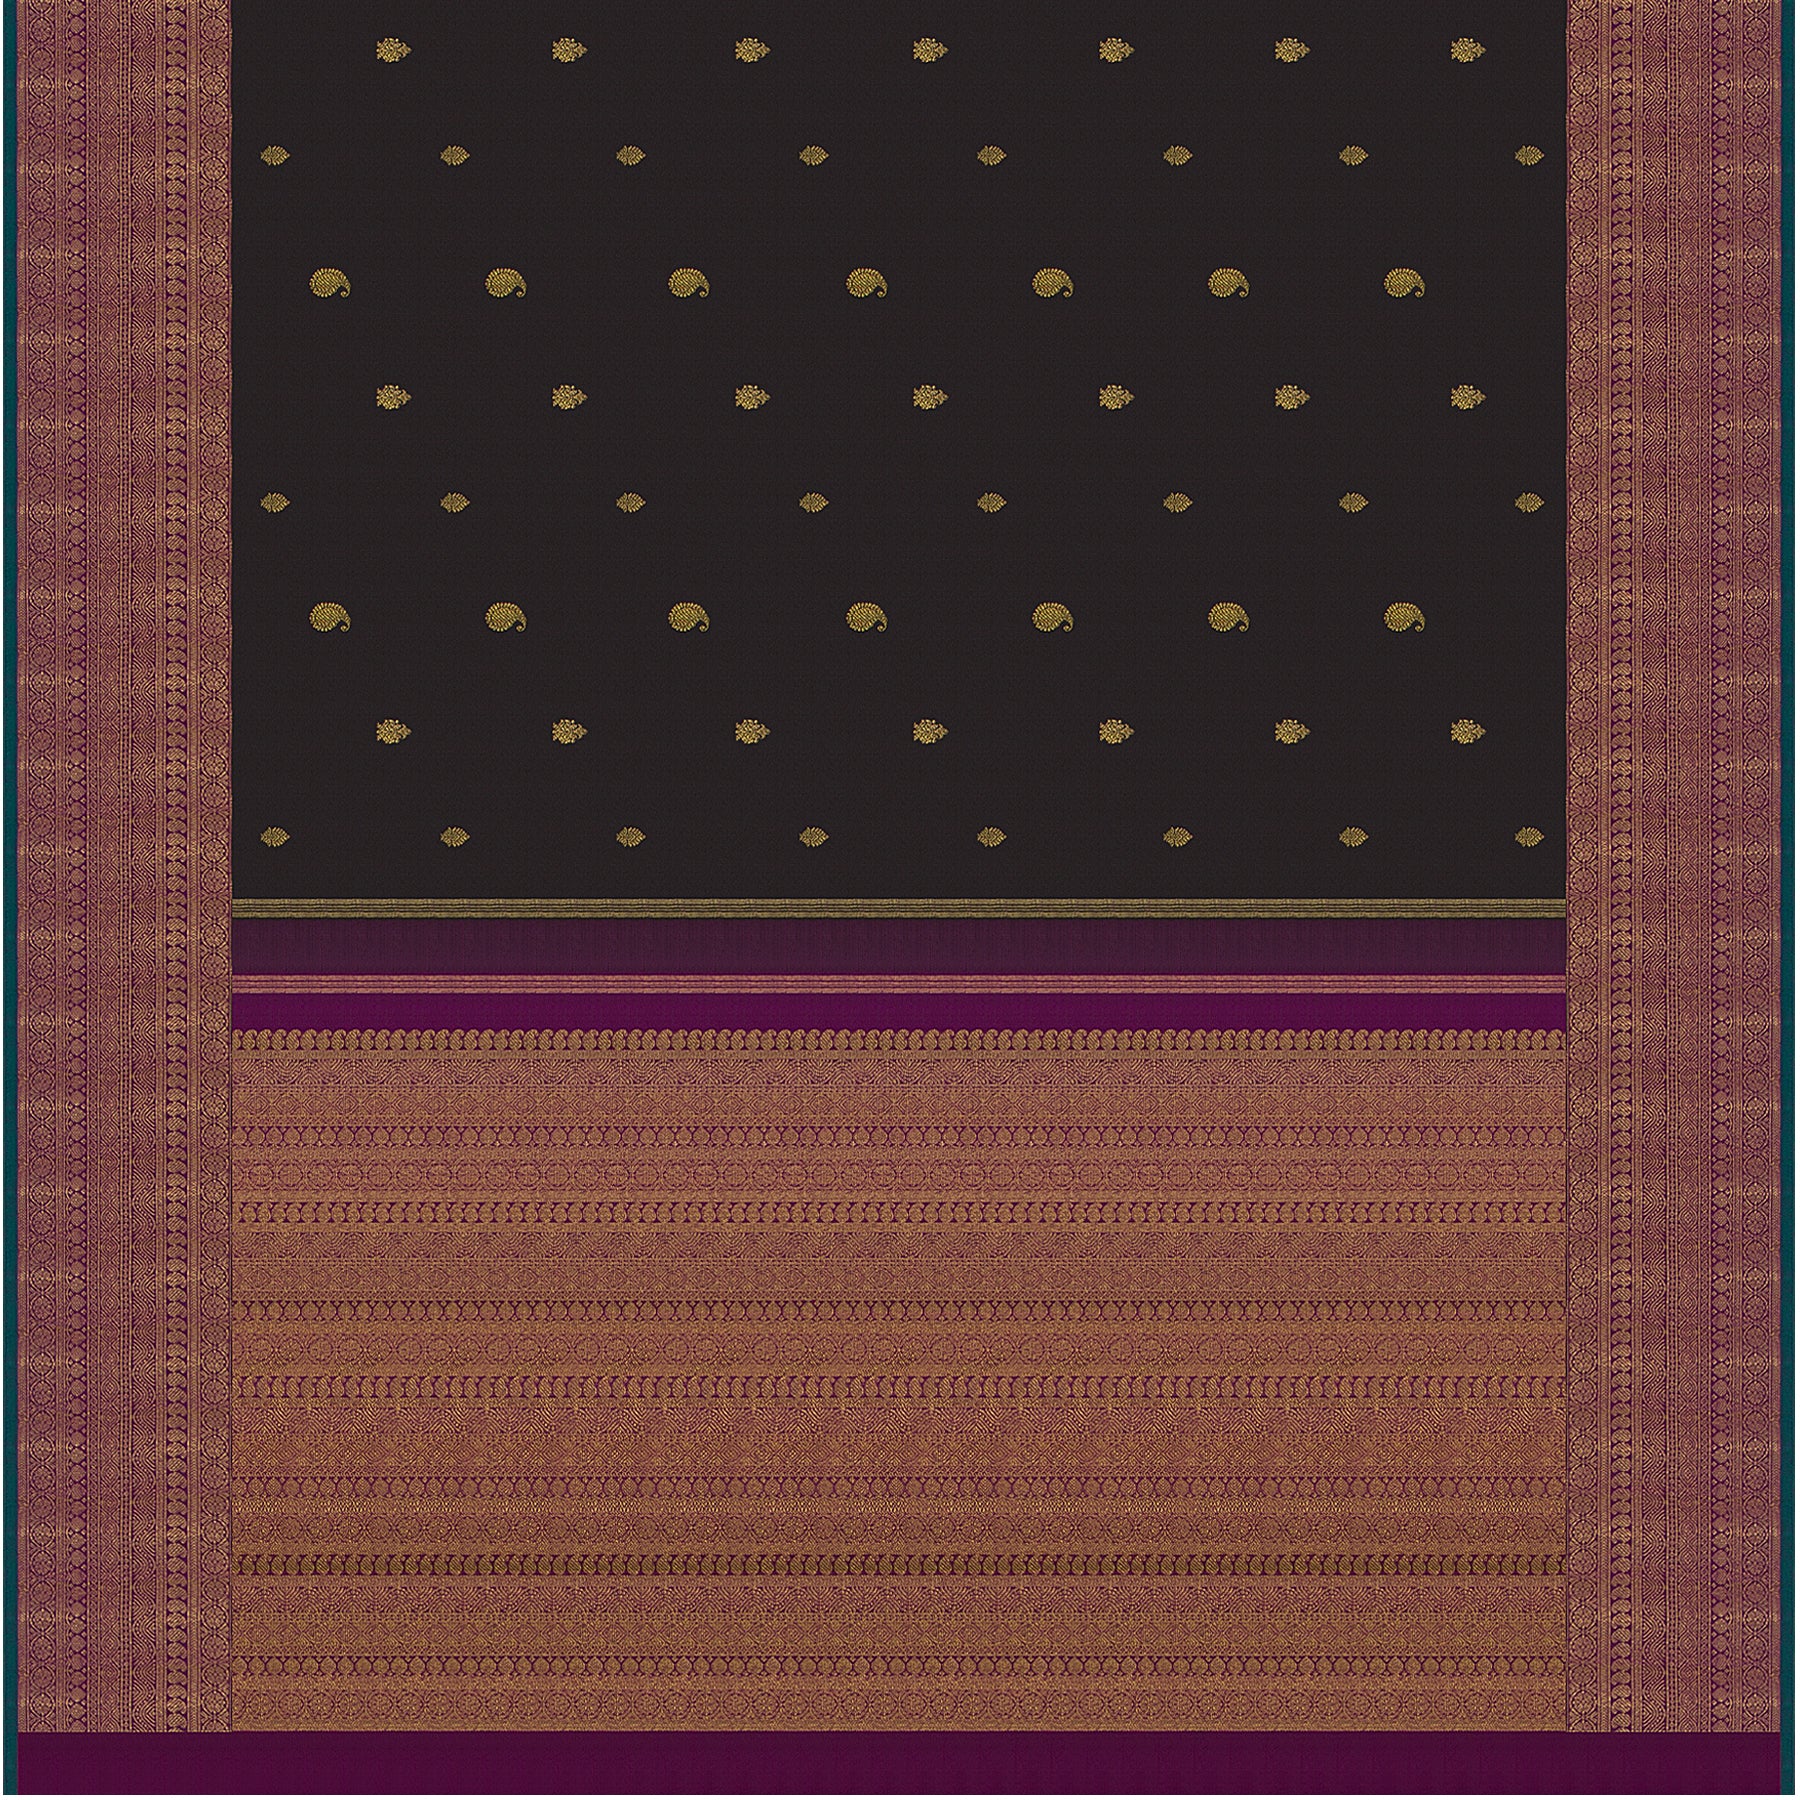 Kanakavalli Kanjivaram Silk Sari 23-595-HS001-09592 - Full View